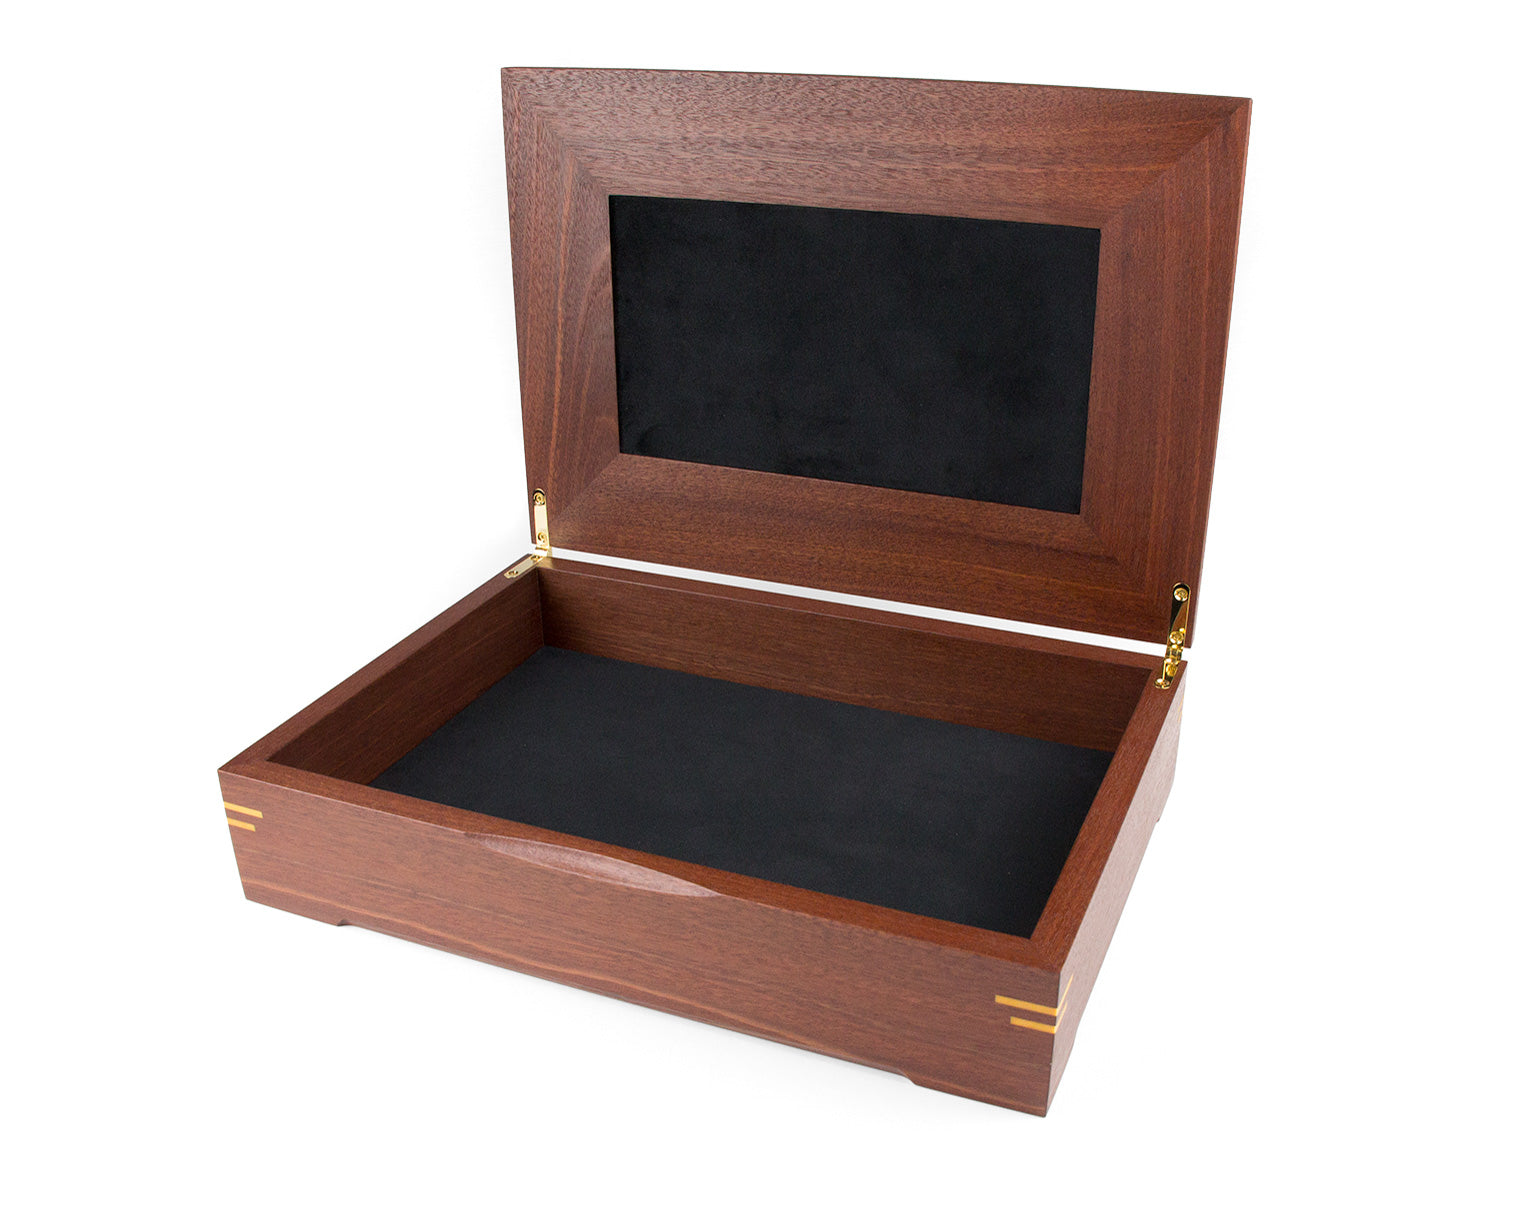 Wooden Document Box handcrafted from Jarrah & Macassar Ebony veneer